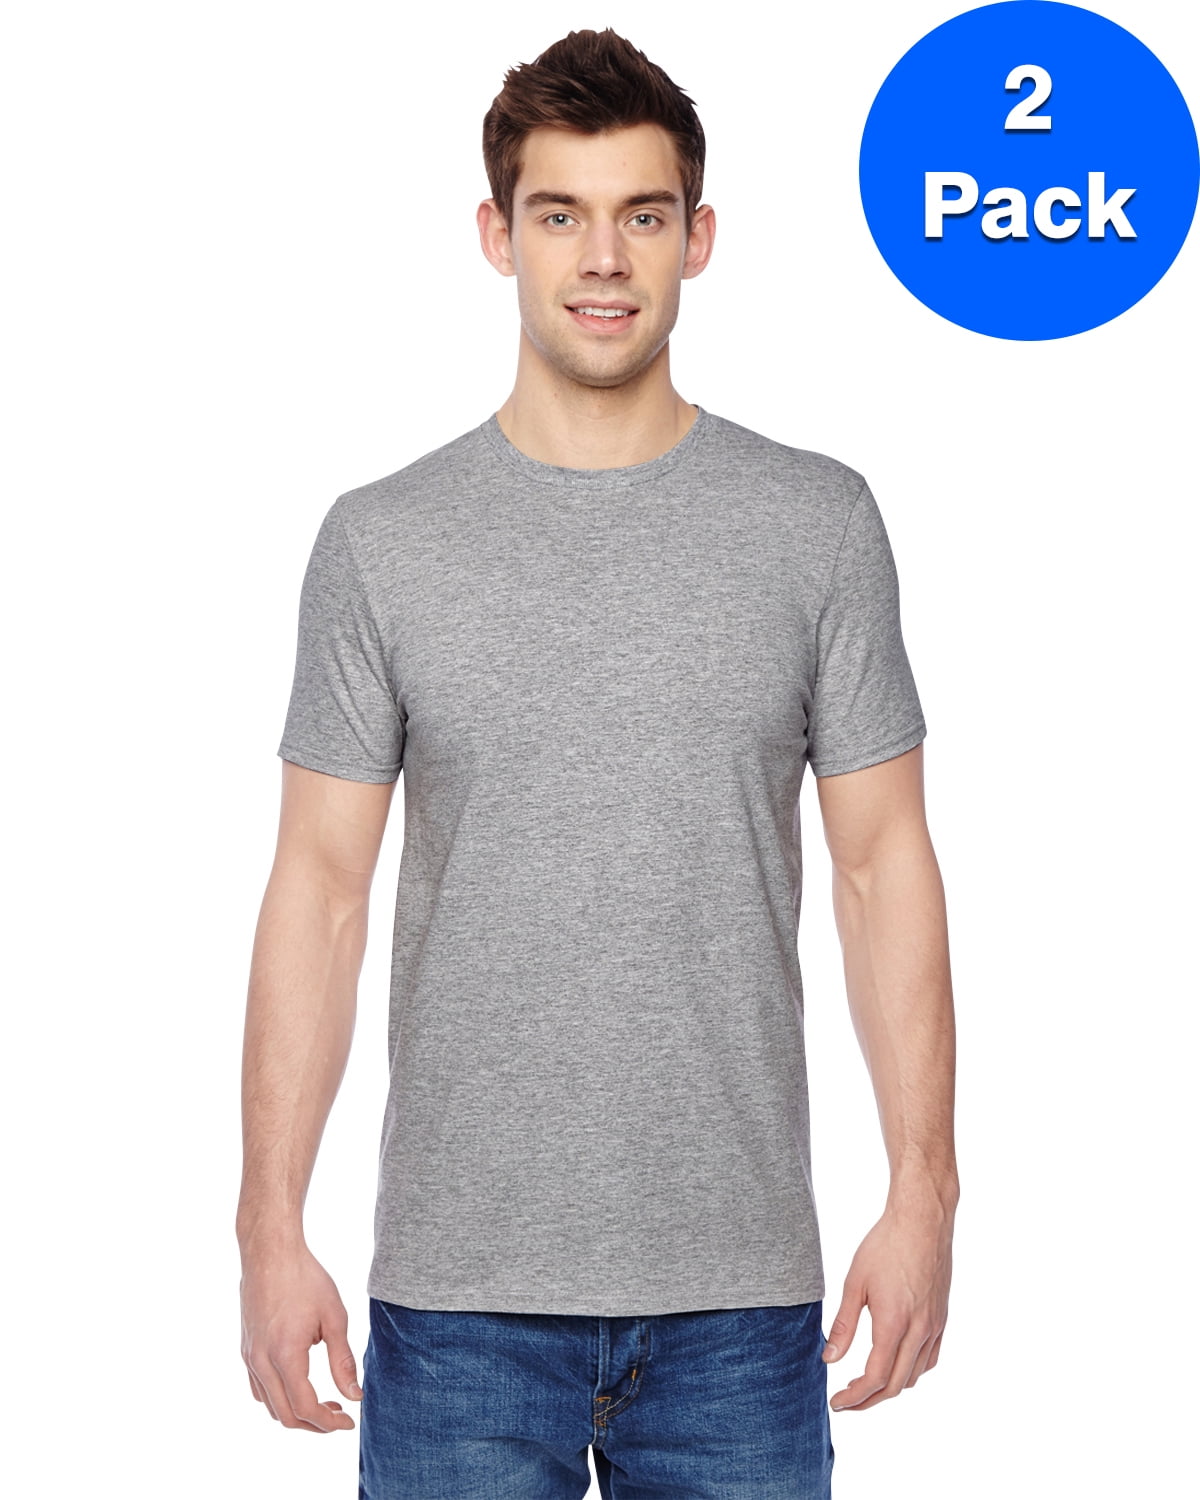 Mens Cotton Jersey Crew T-Shirt SF45R (2 PACK) - Walmart.com